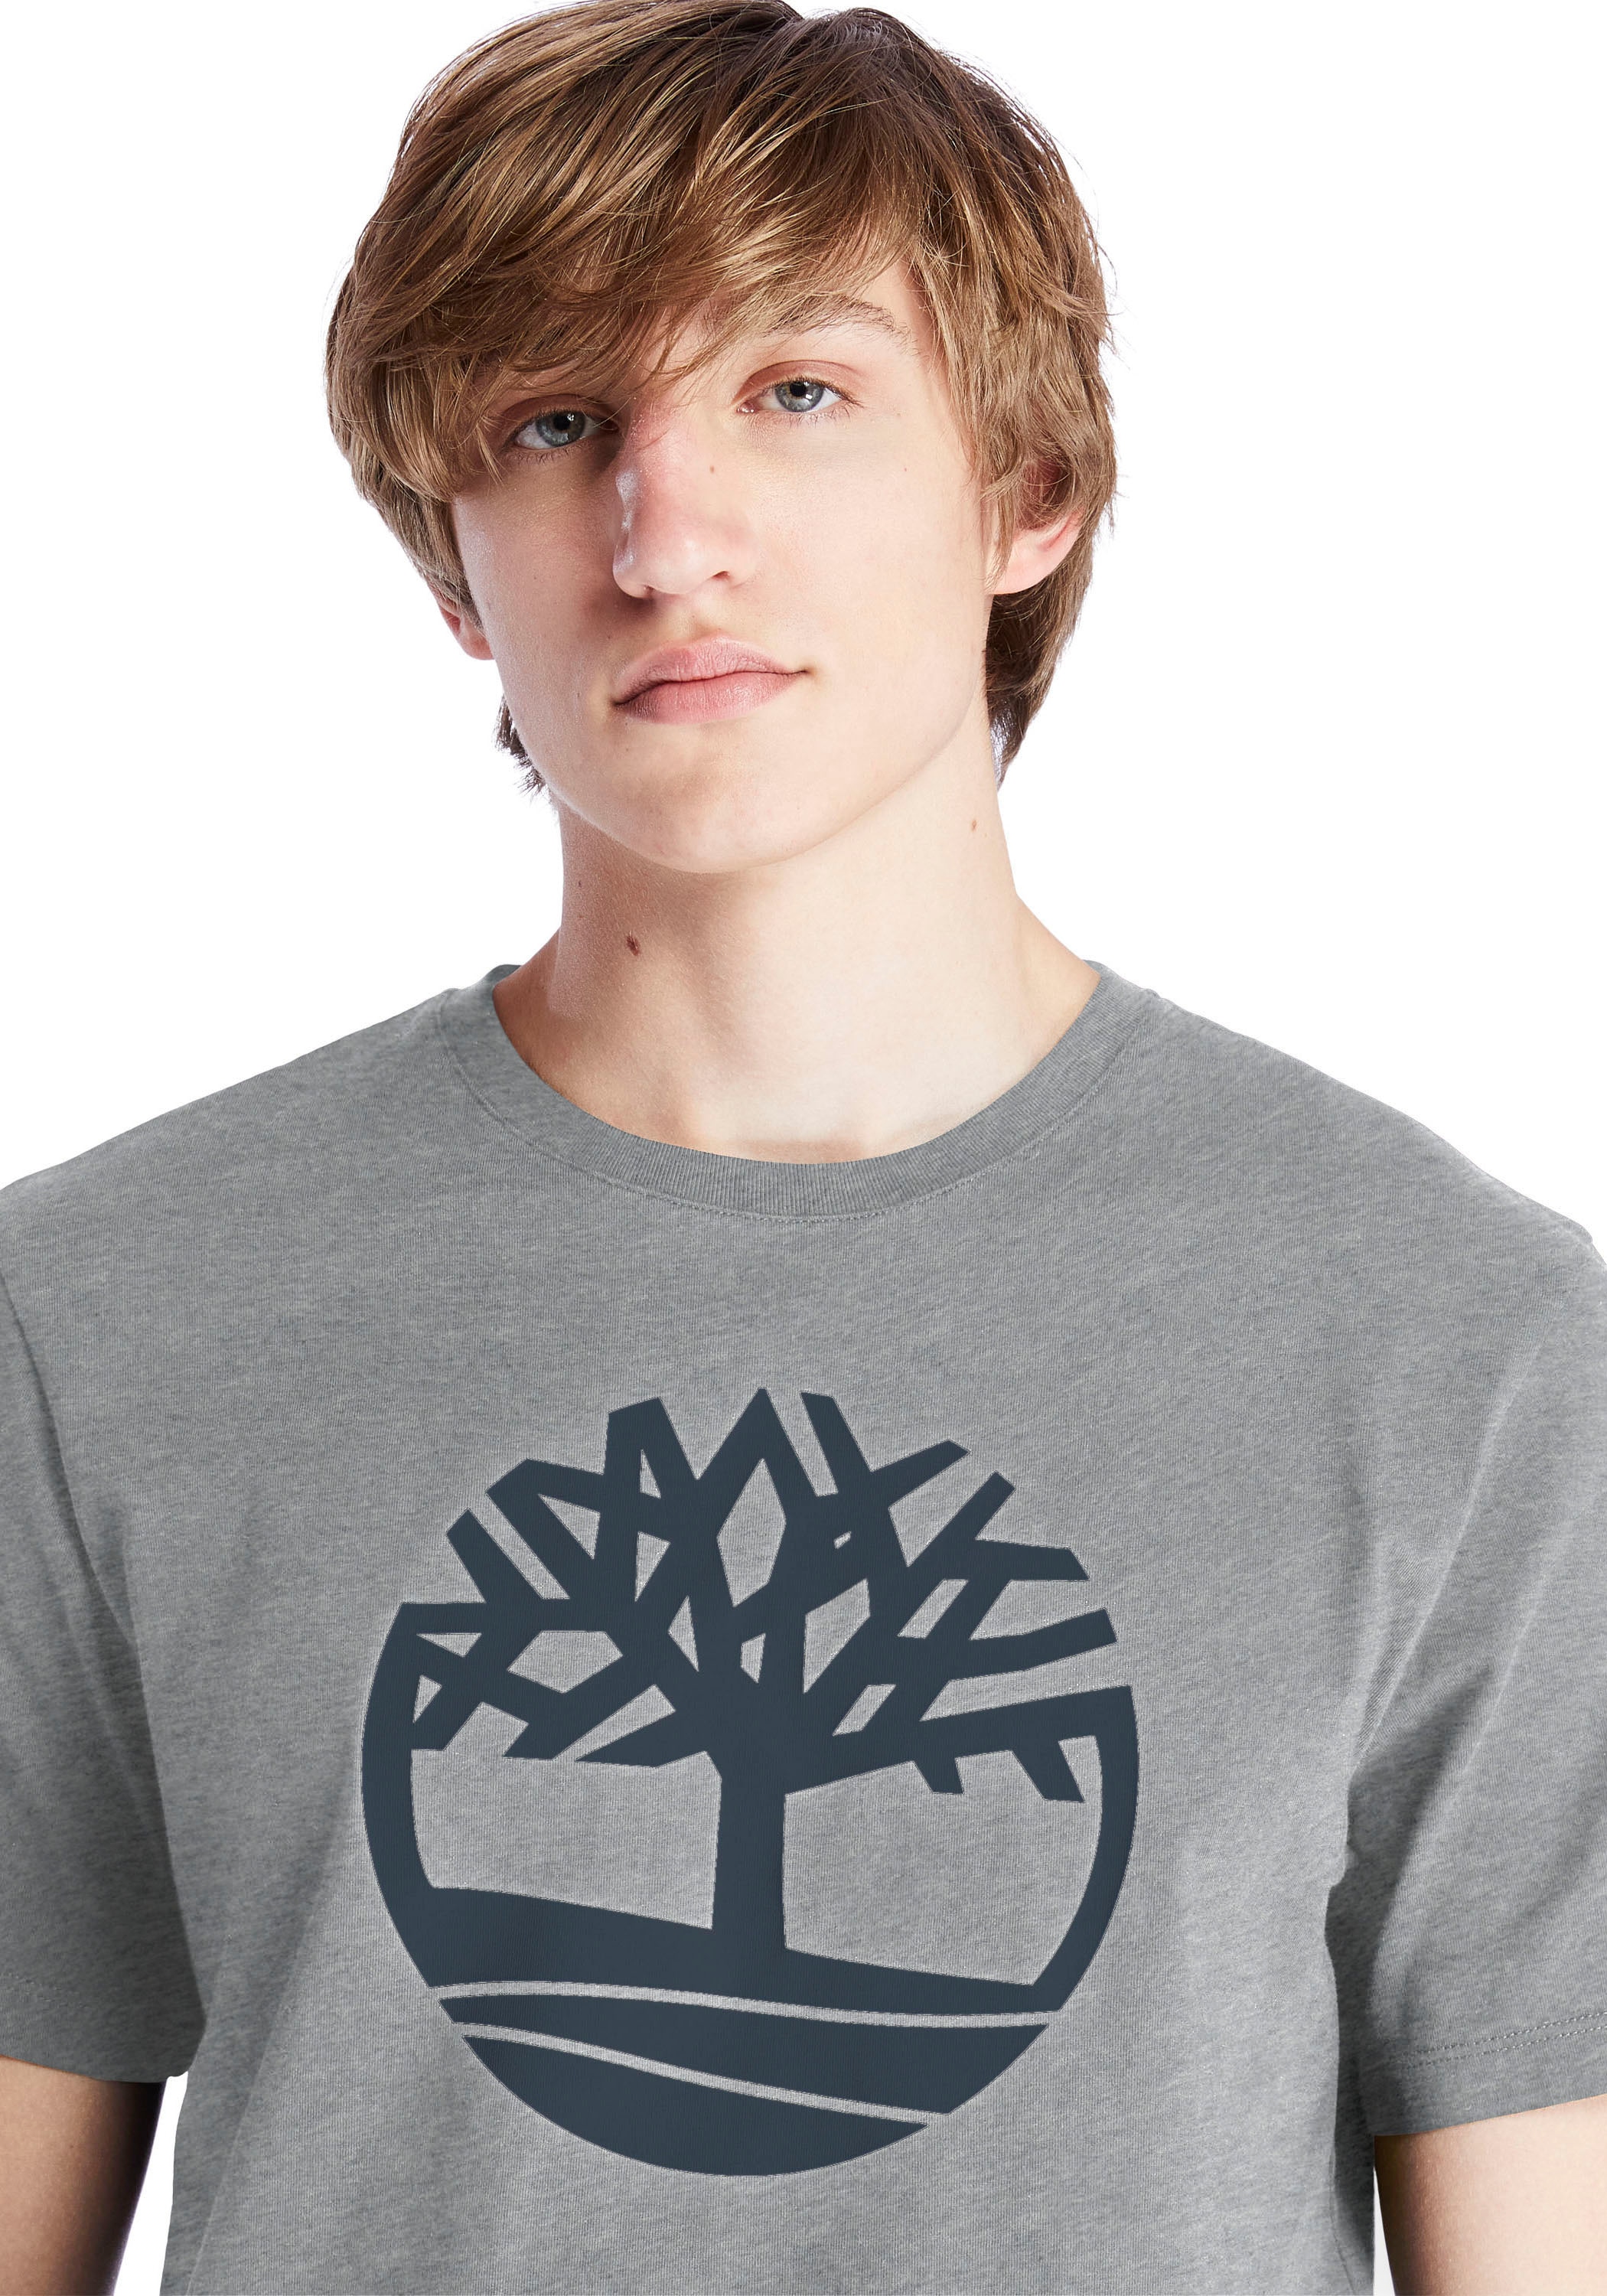 online River Tree« Timberland T-Shirt bei OTTO bestellen »Kennebec